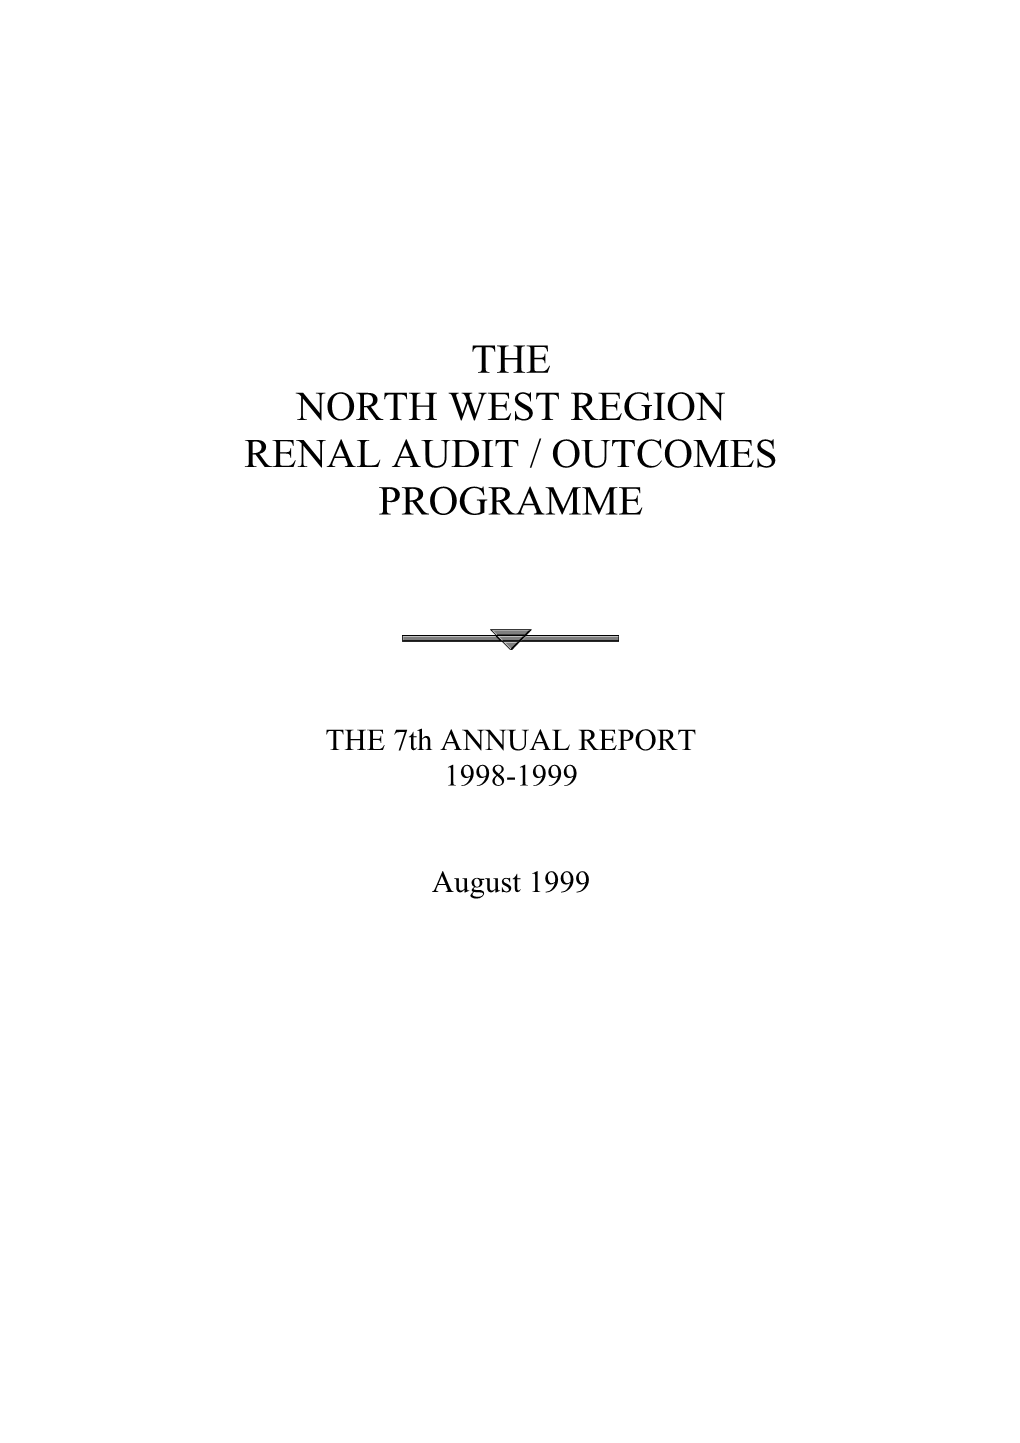 North West Region